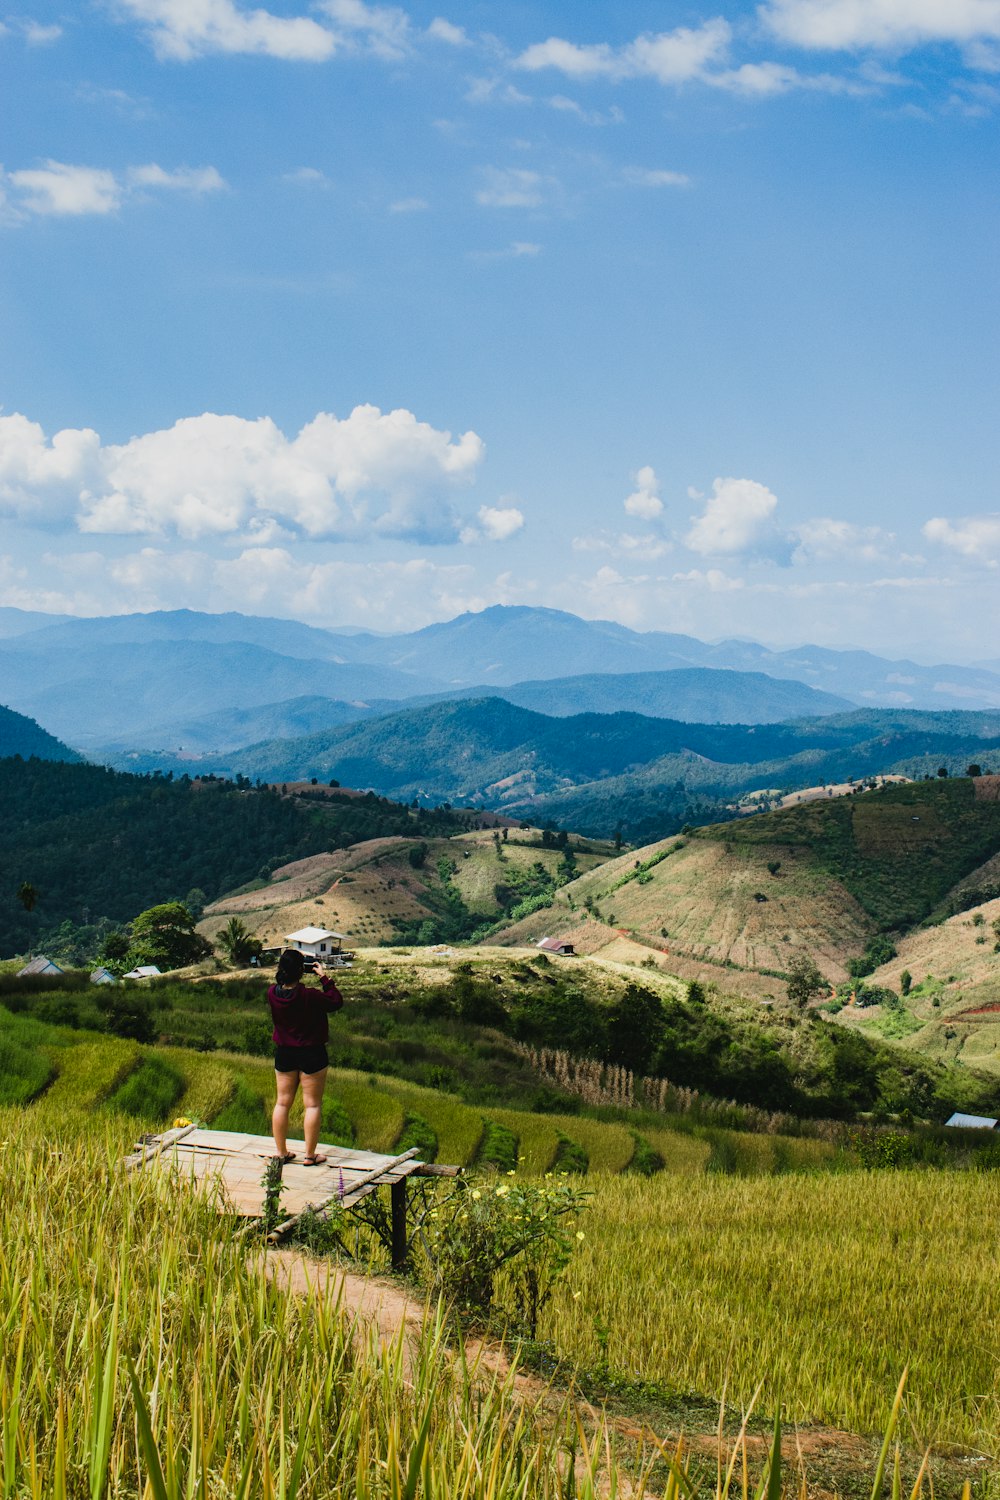 Una persona in piedi su una sporgenza che domina una valle con le montagne sullo sfondo